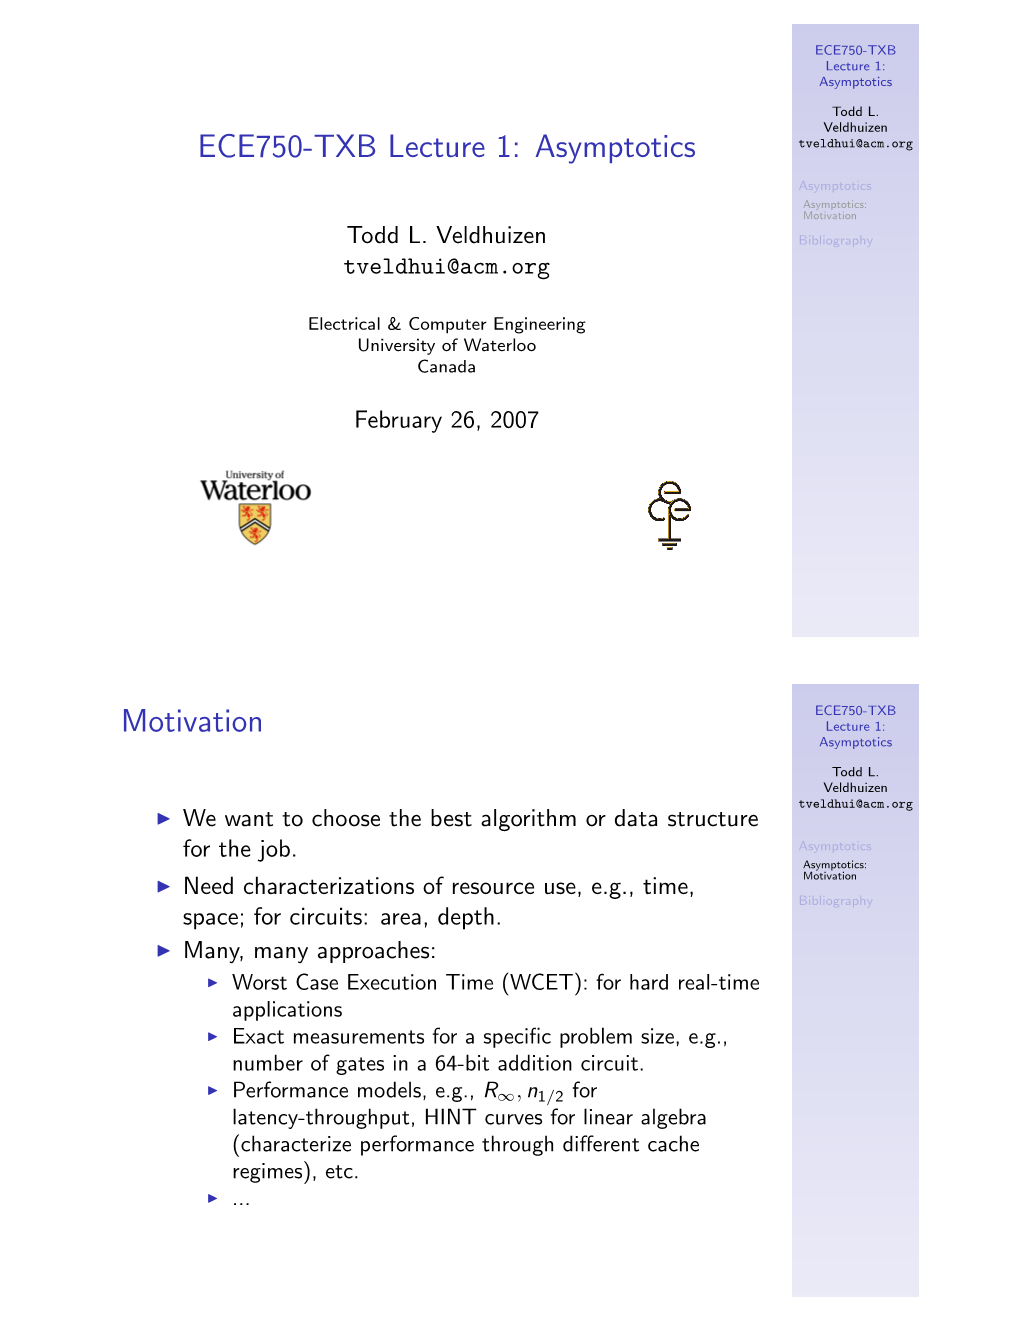 ECE750-TXB Lecture 1: Asymptotics